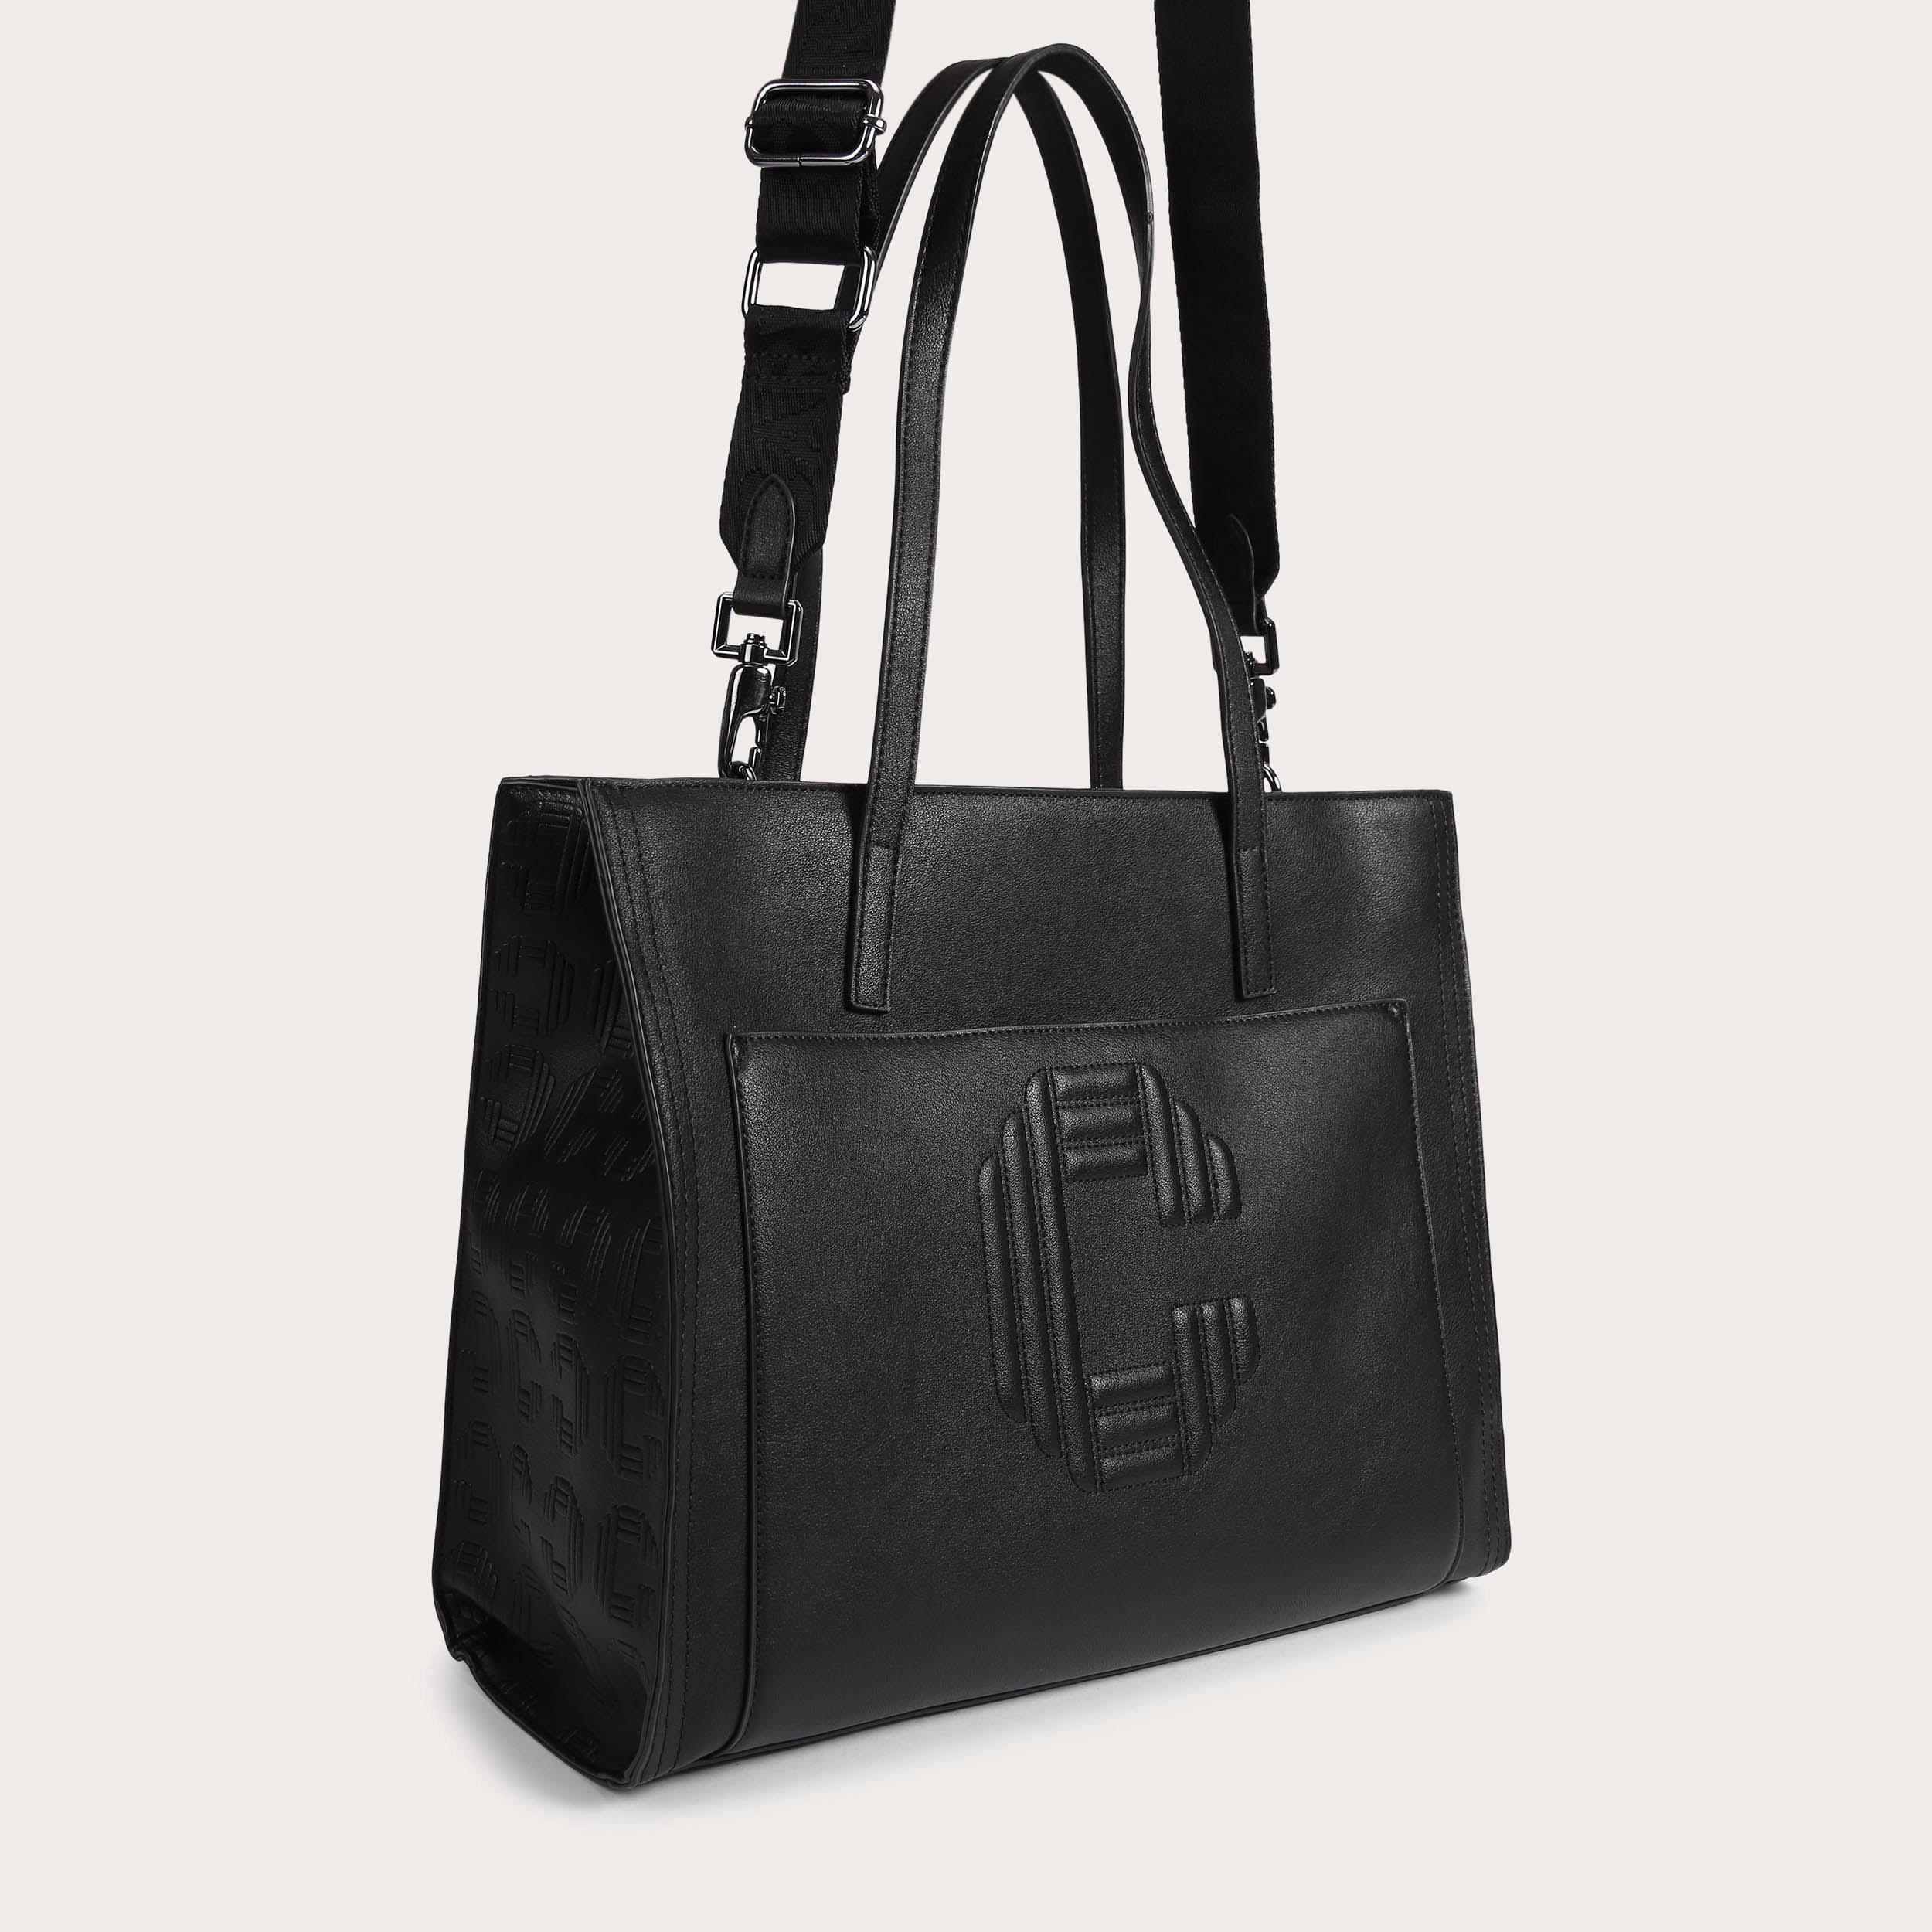 ICON SHOPPER Black Structured Large Shoulder Shopper Bag by CARVELA